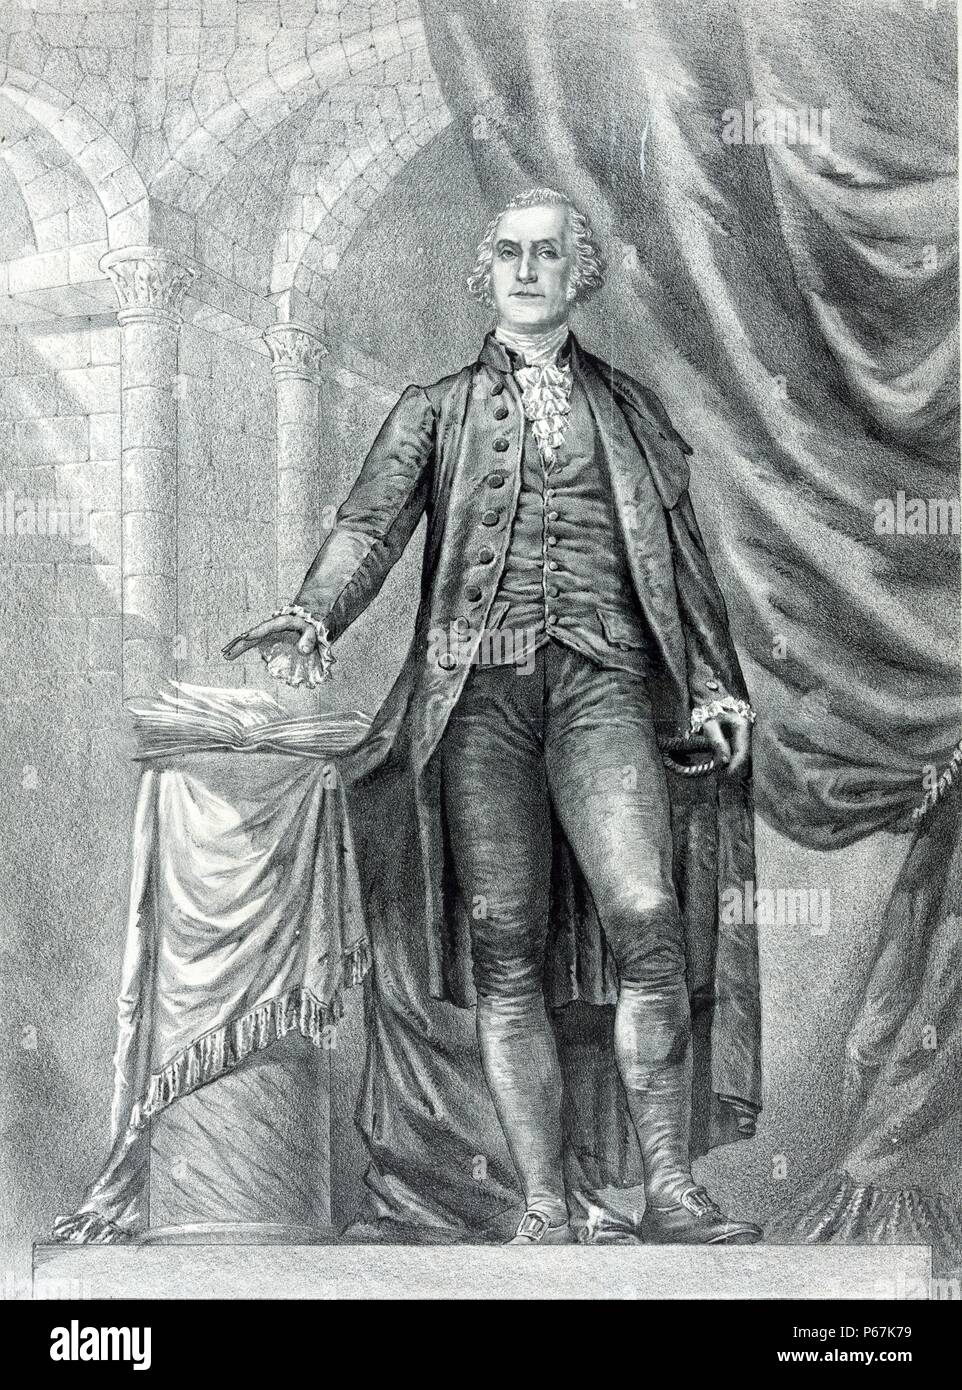 George Washington, la prestation de serment comme premier président des États-Unis d'Amérique. Washington a été le premier président des Etats-Unis, le commandant en chef de l'armée continentale pendant la guerre d'Indépendance américaine, et l'un des pères fondateurs de l'United States Banque D'Images